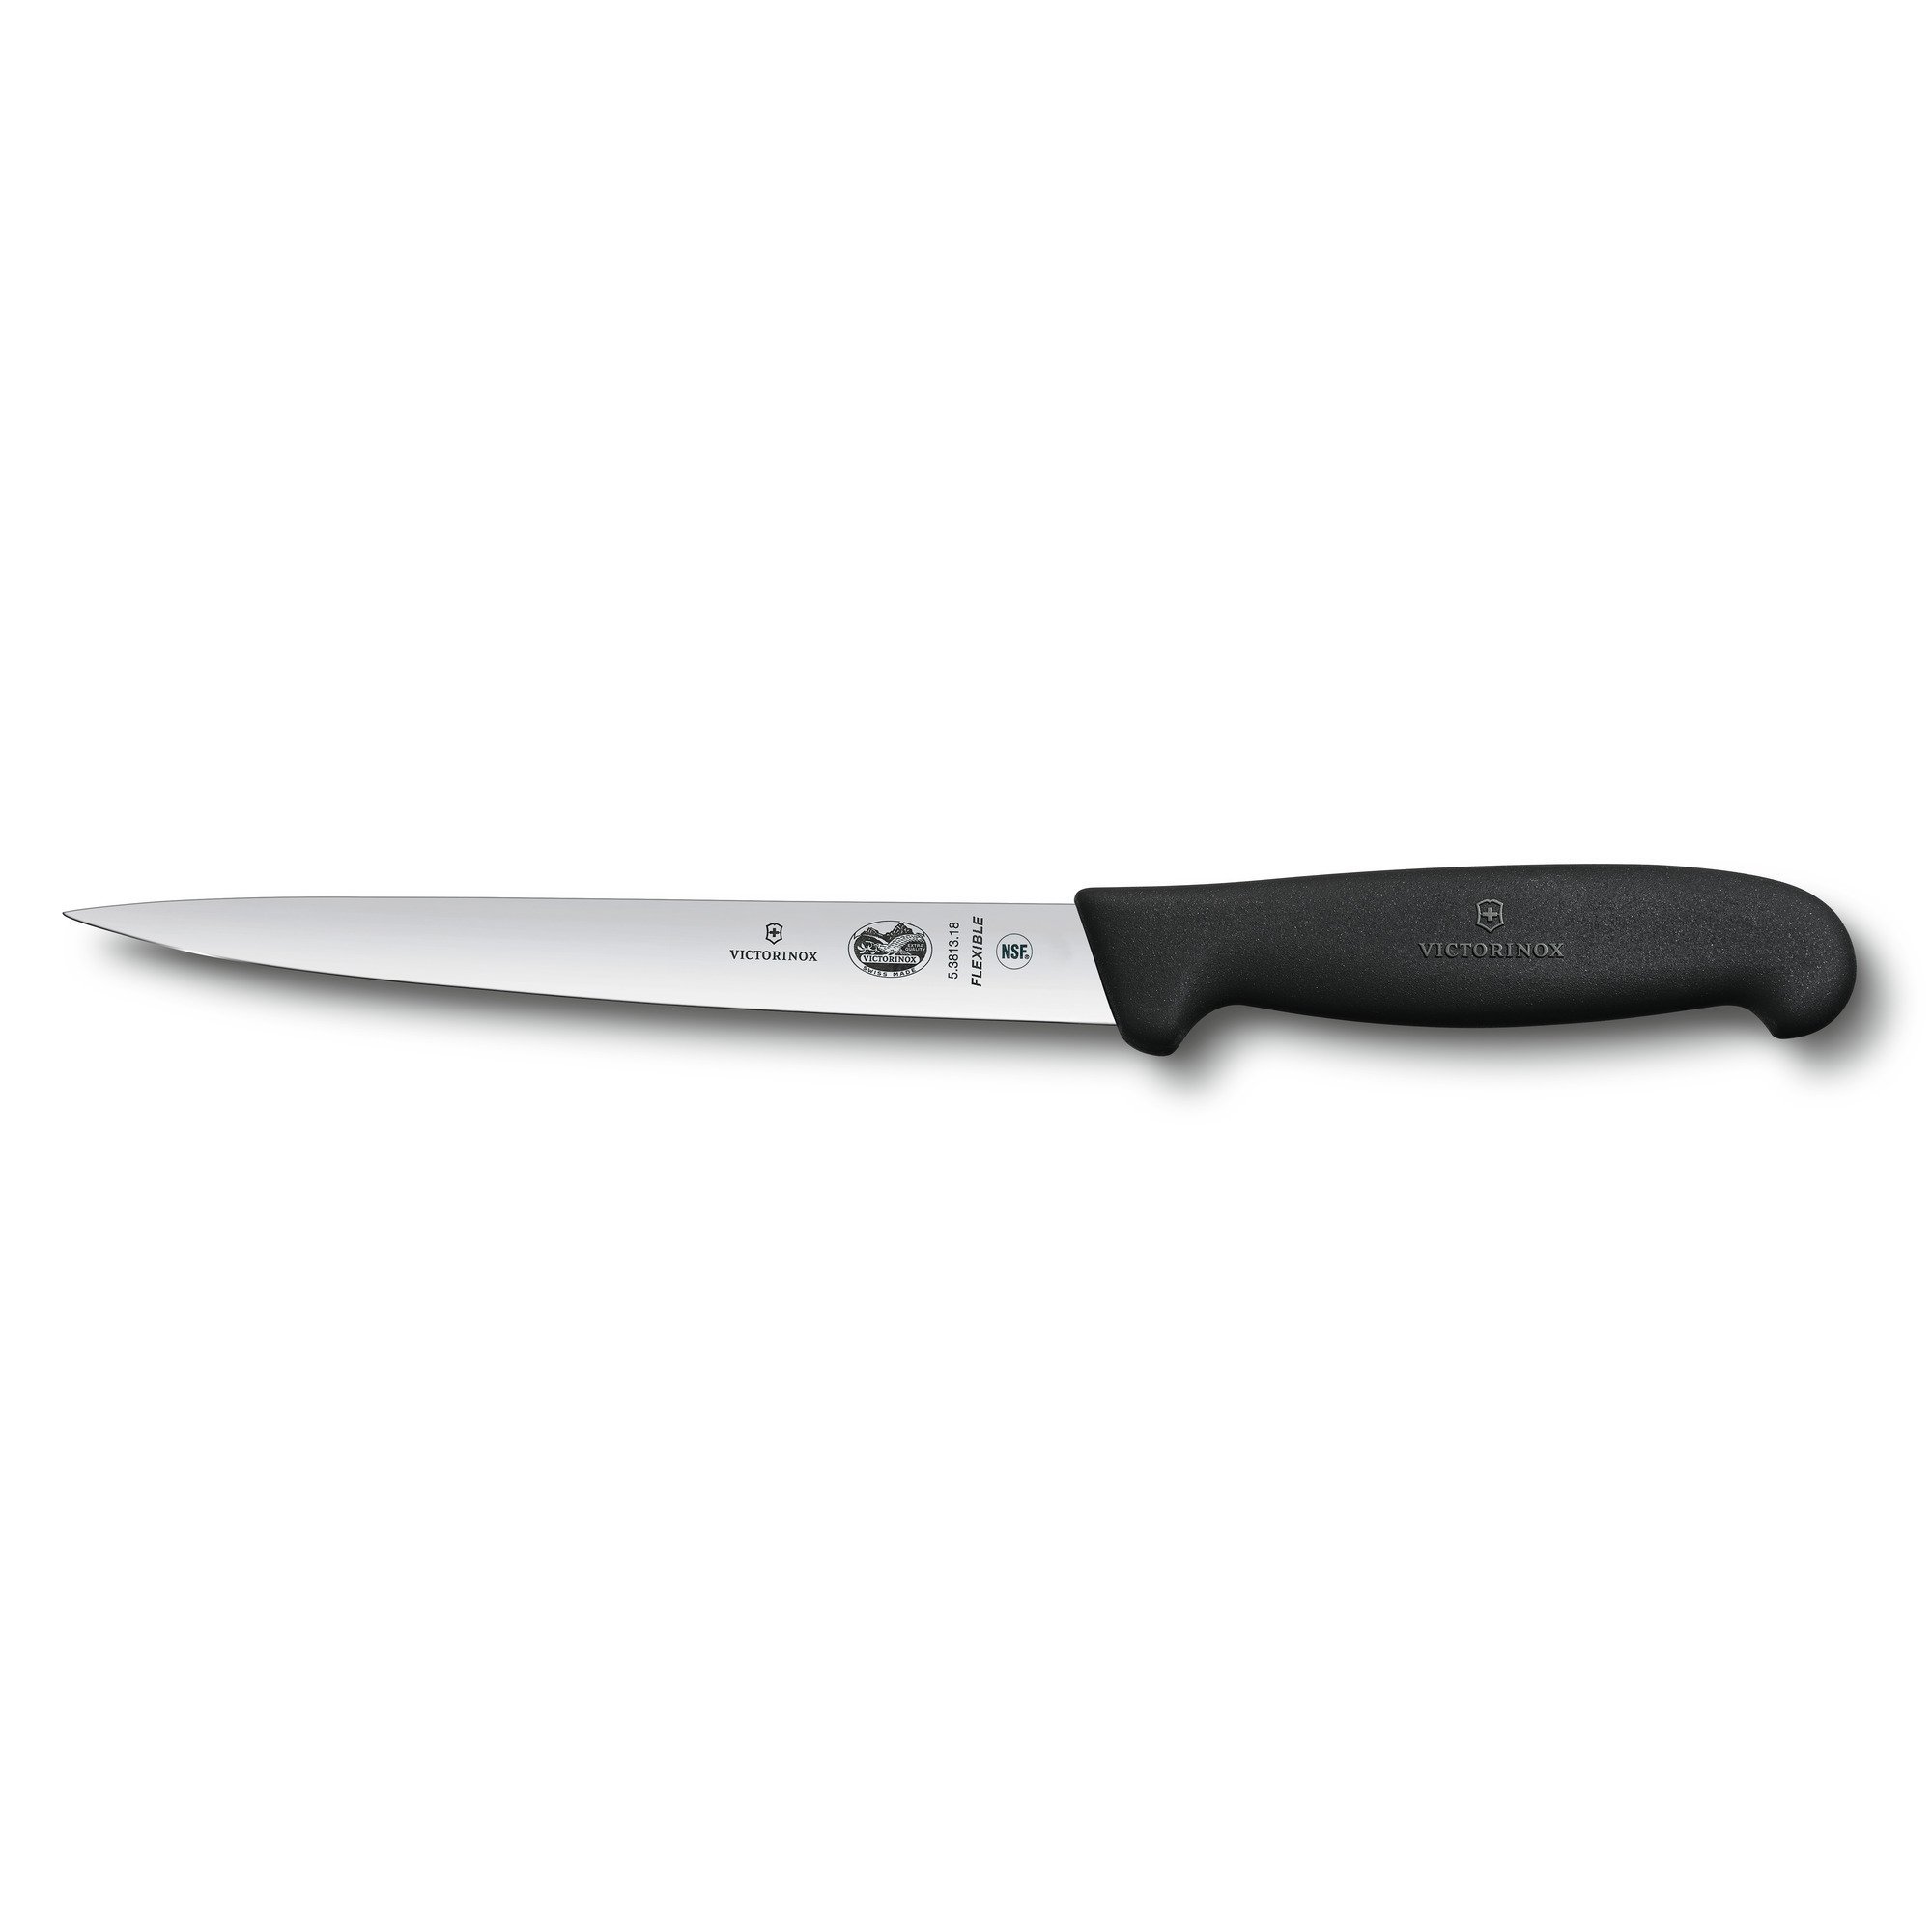 Нож филейный для рыбы Fibrox 18 см Victirinox, нержавеющая сталь, рукоять термопластический эластомер